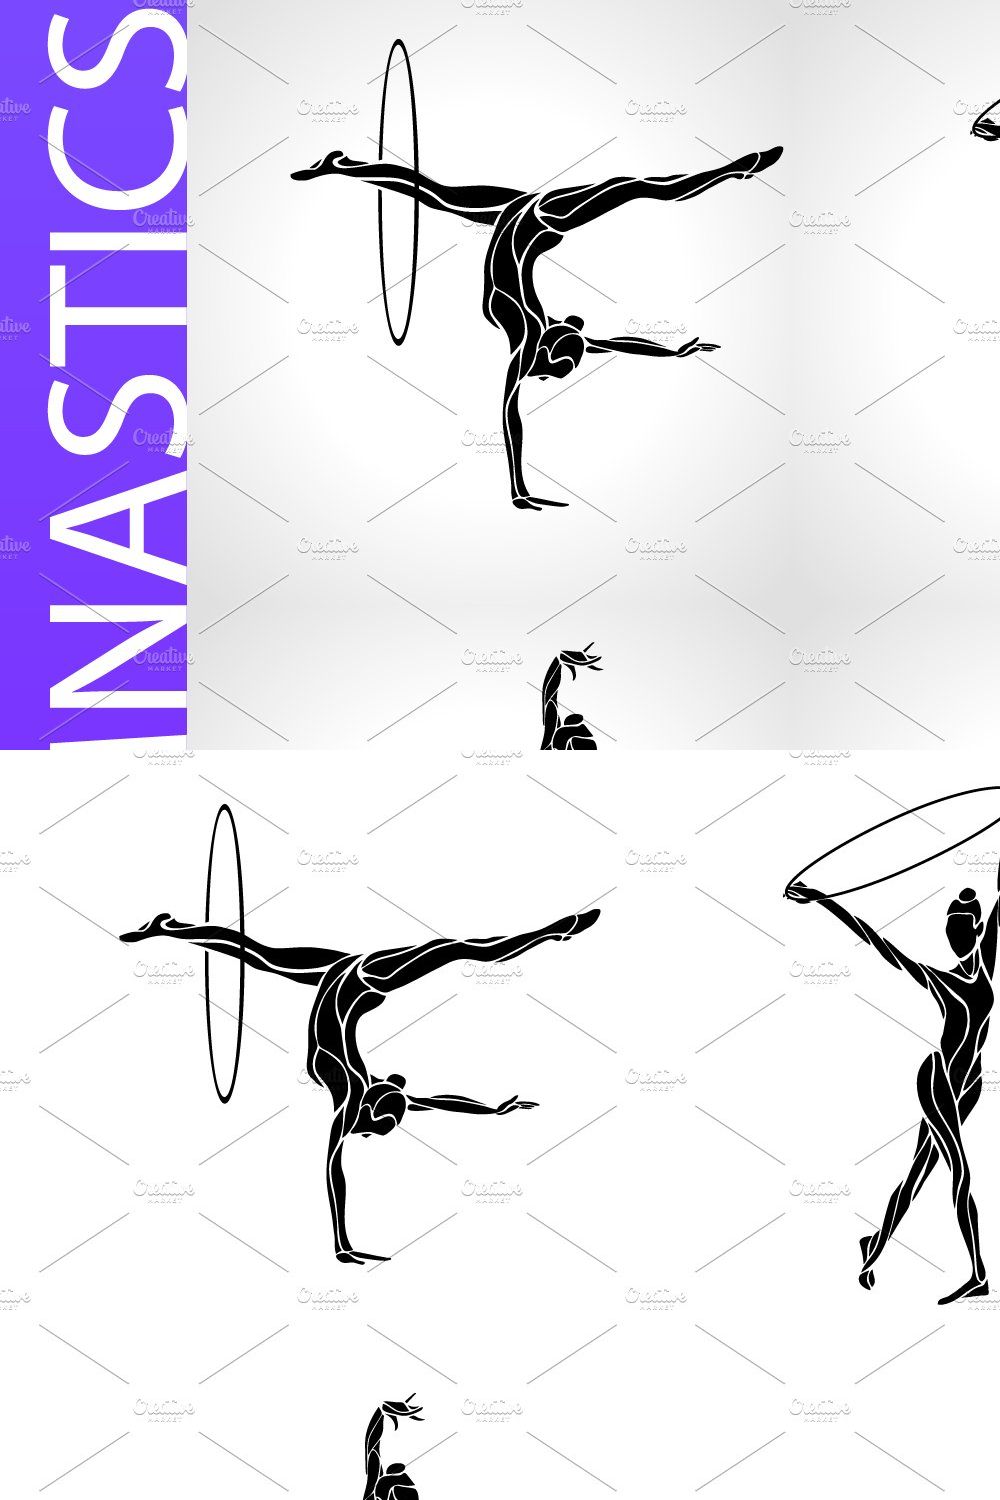 Set of rhythmic gymnastics silhouettes,gymnastics rhythmic